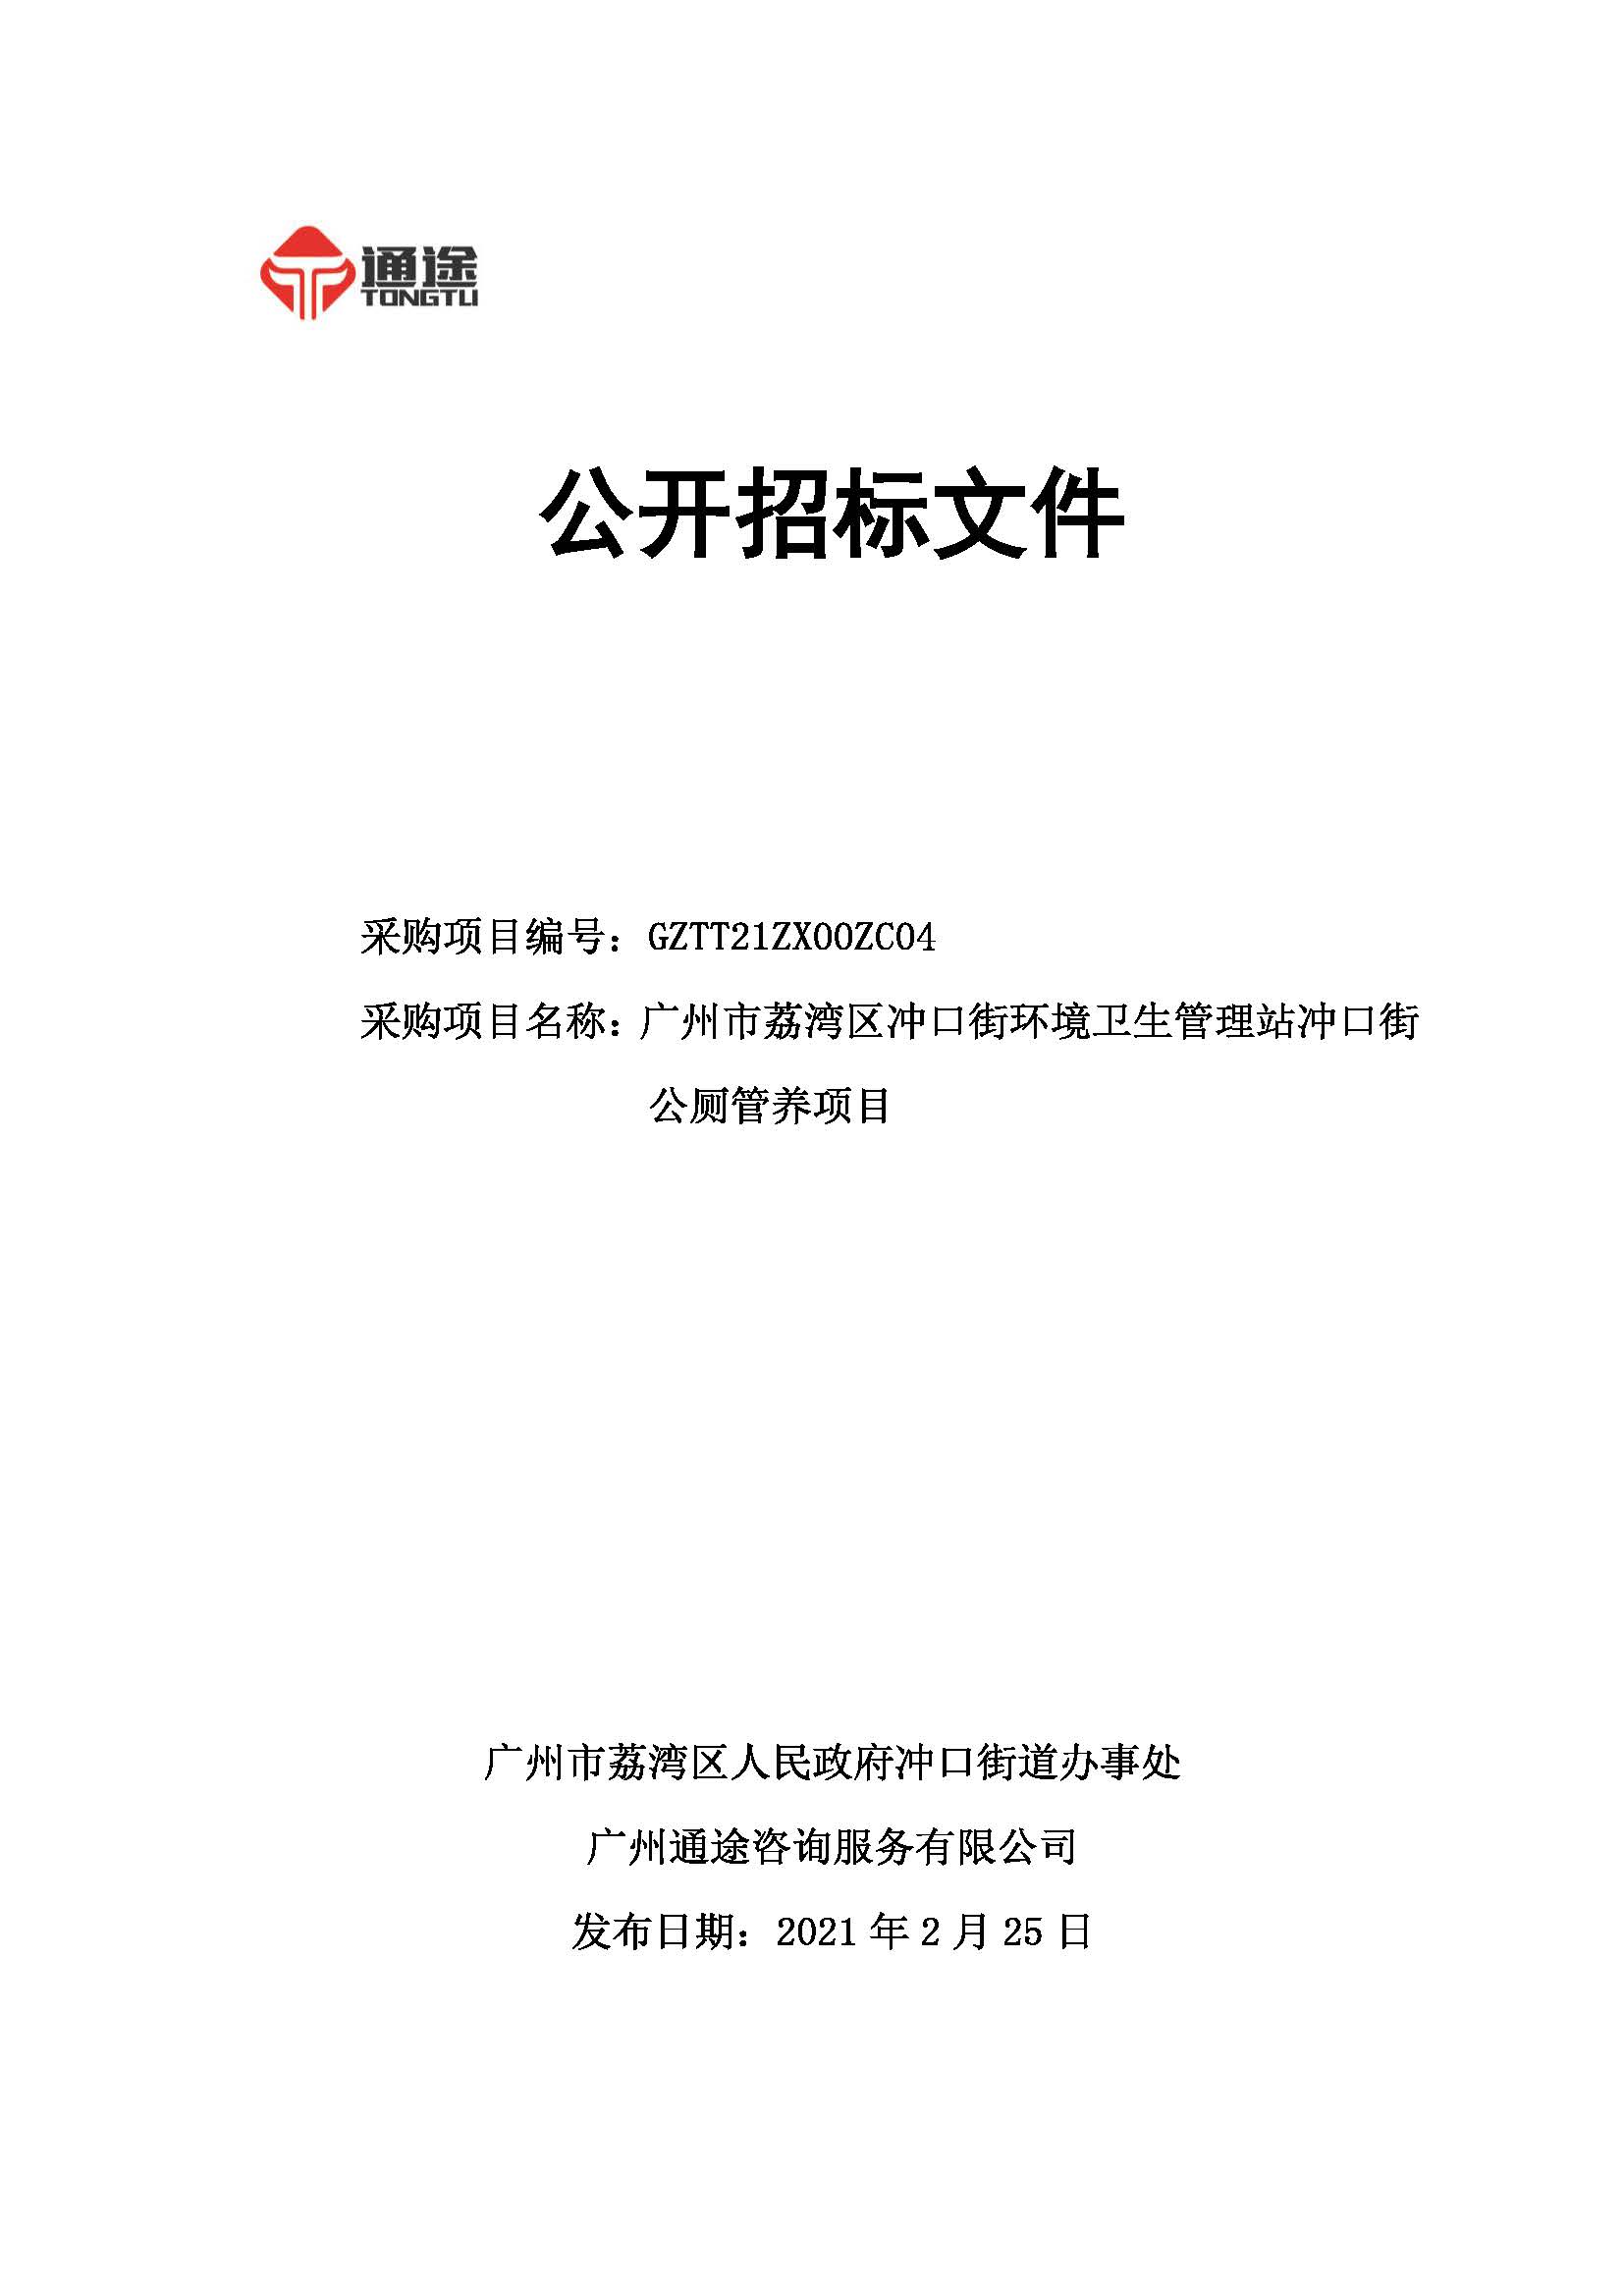 发售稿：ZC0004广州市荔湾区冲口街环境卫生管理站冲口街公厕管养项目2.25.jpg